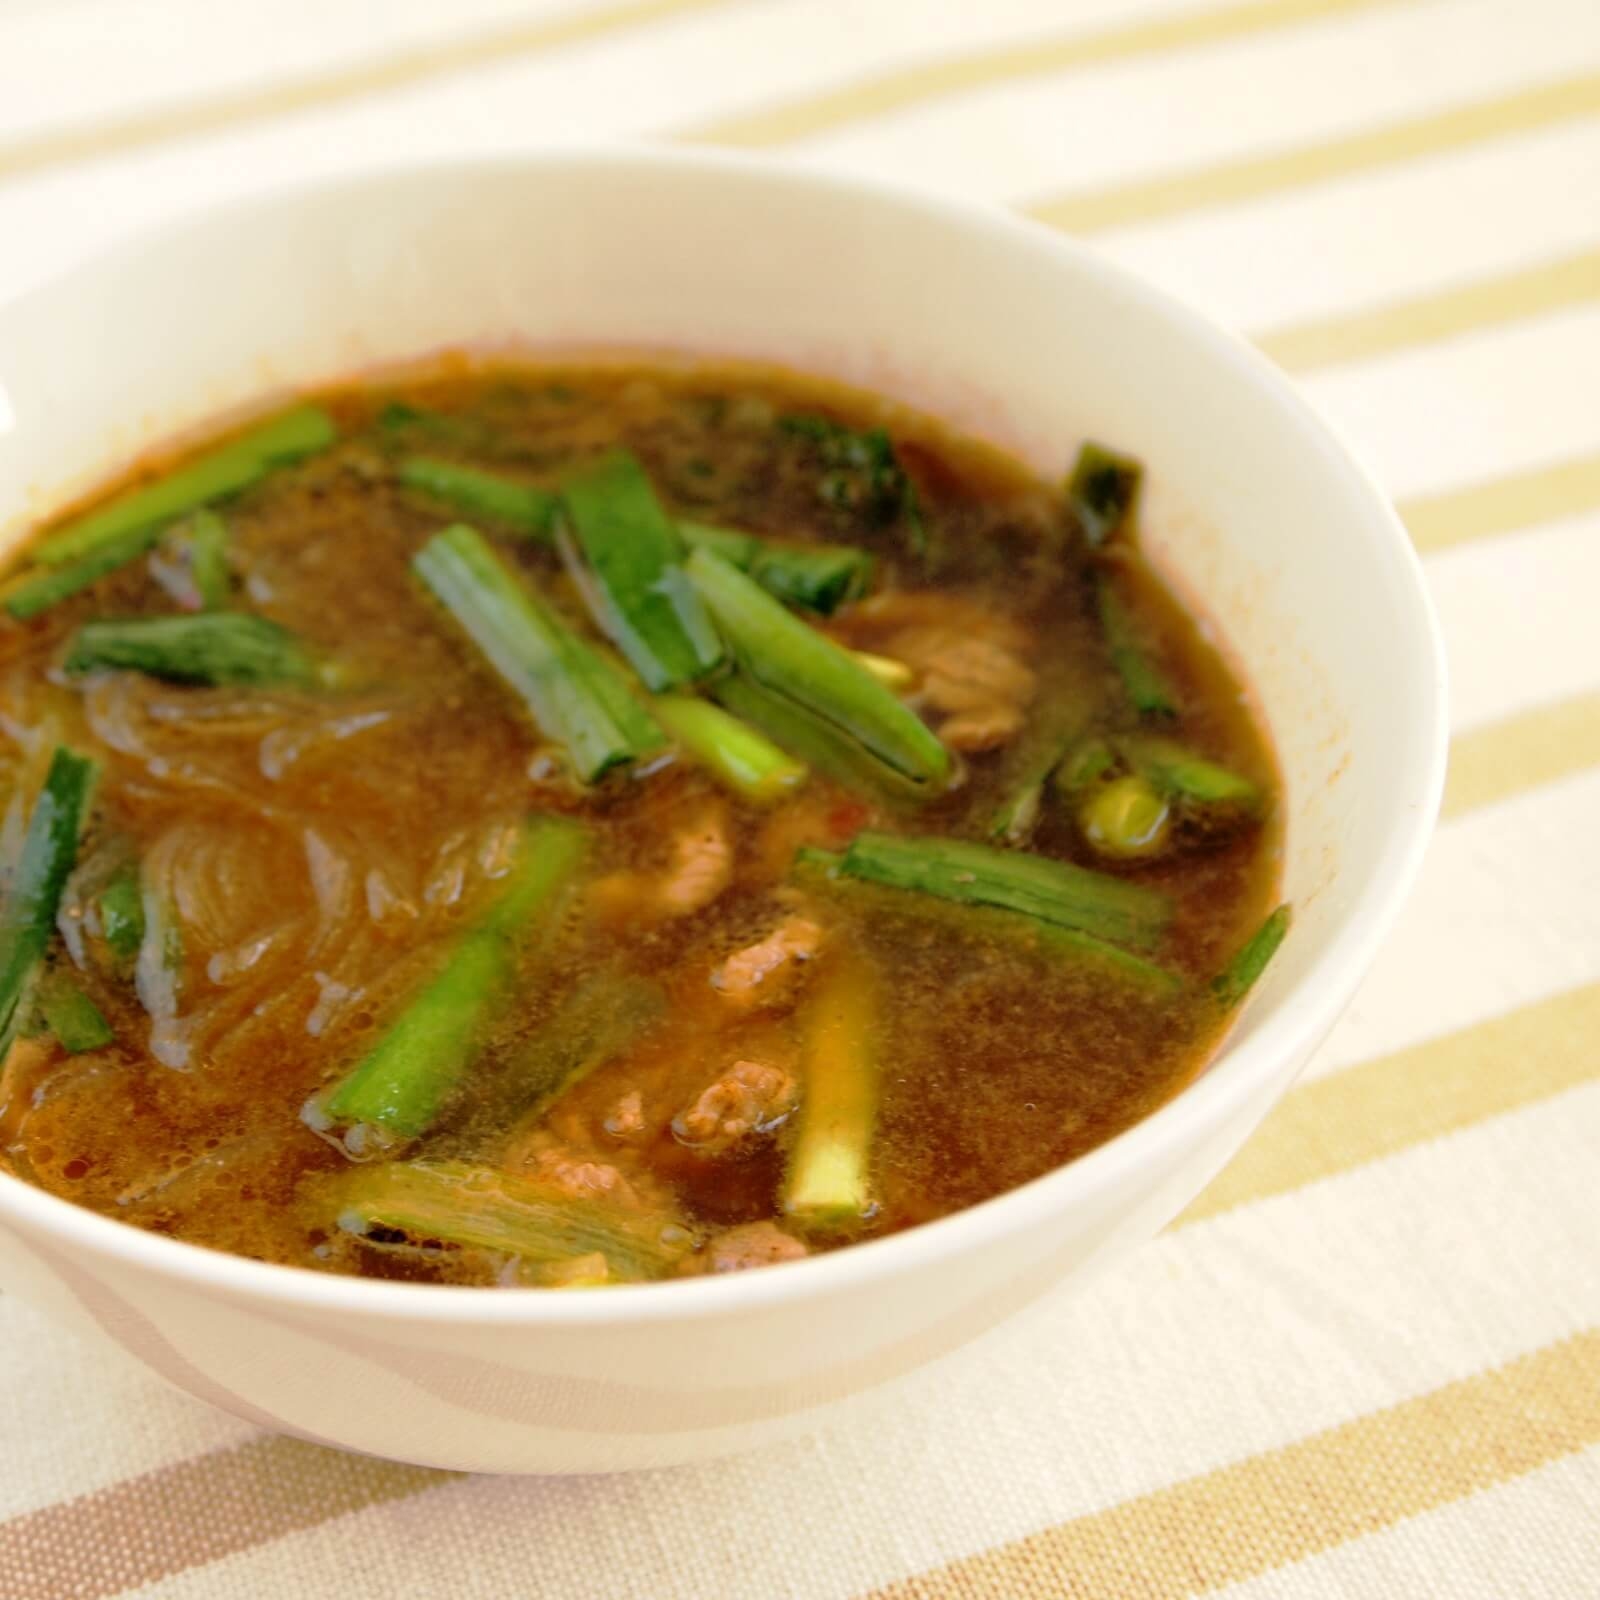 にらと牛肉のスープ 時短レシピ イエコックの宅配カット野菜を使って 素早くおいしく Iecook